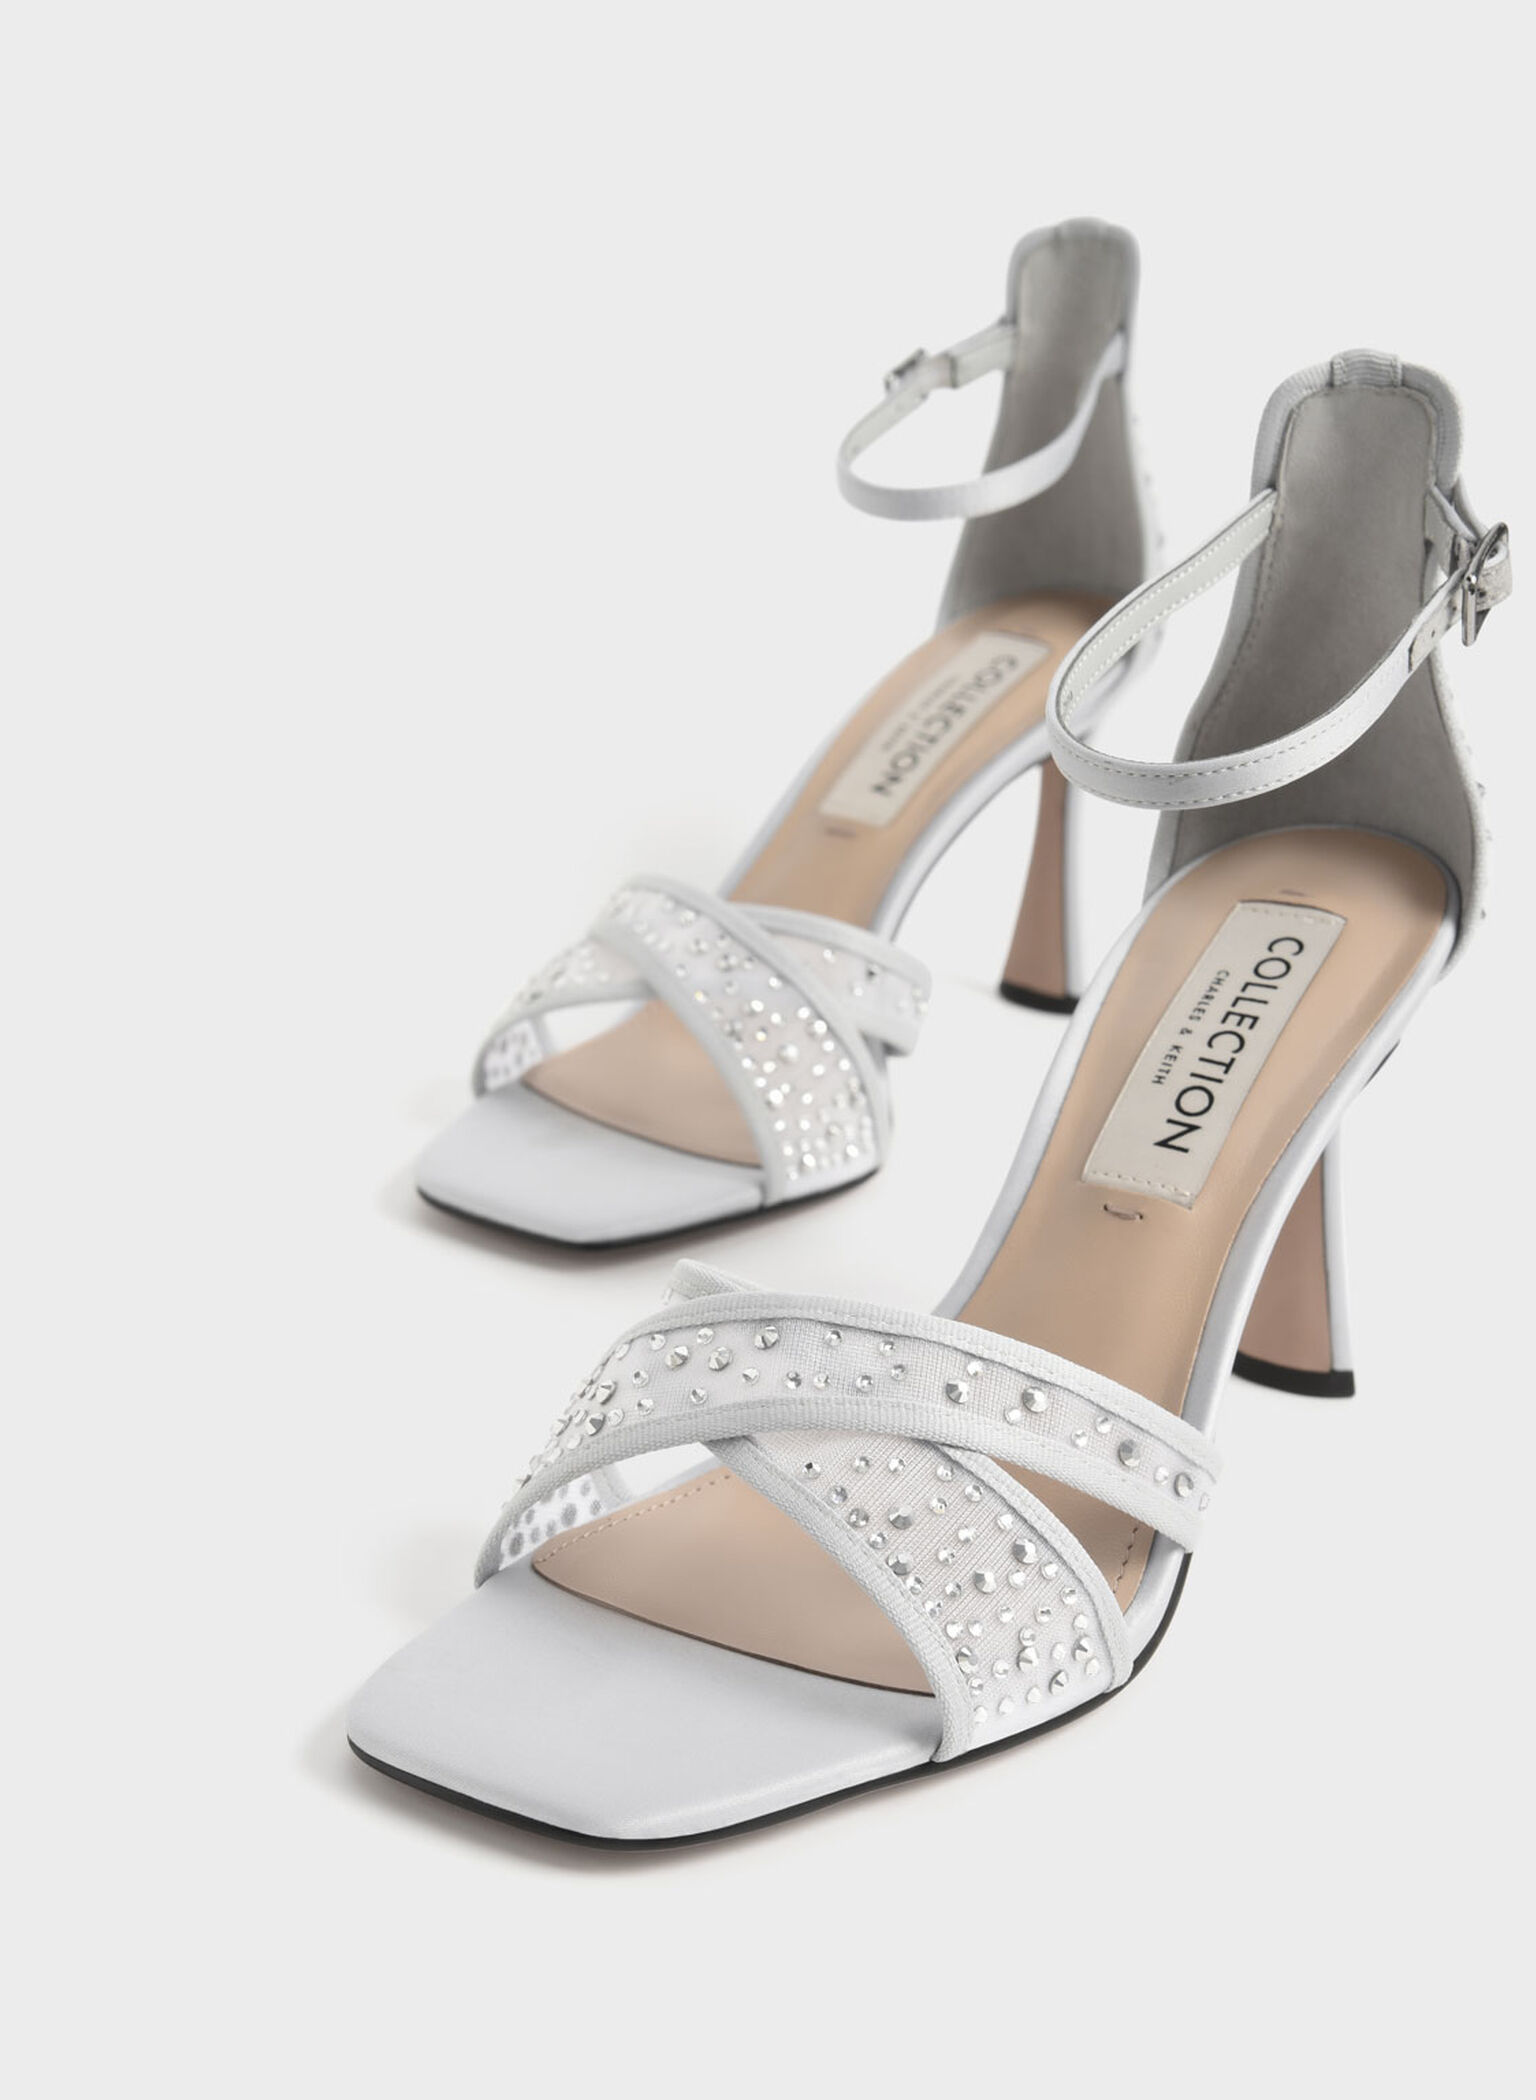 Blythe Mesh & Satin Embellished Sandals, Silver, hi-res